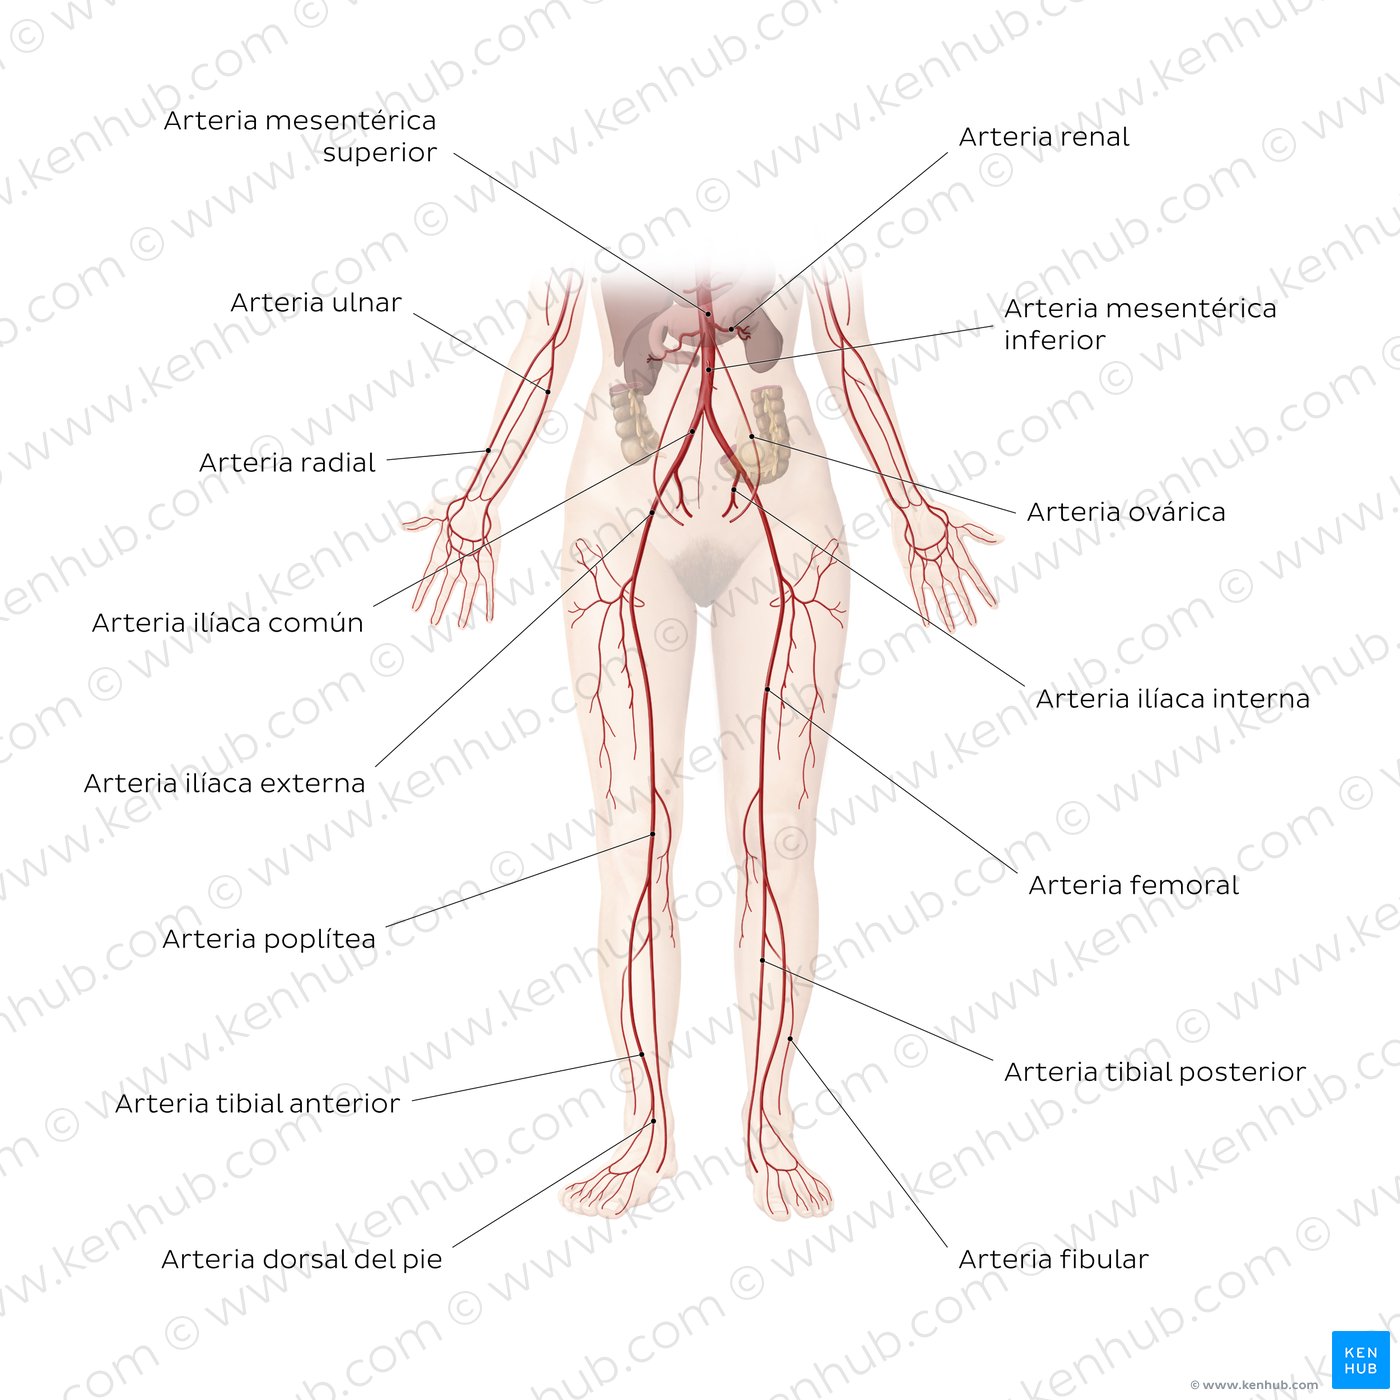 Sistema cardiovascular: Arterias de la porción inferior del cuerpo